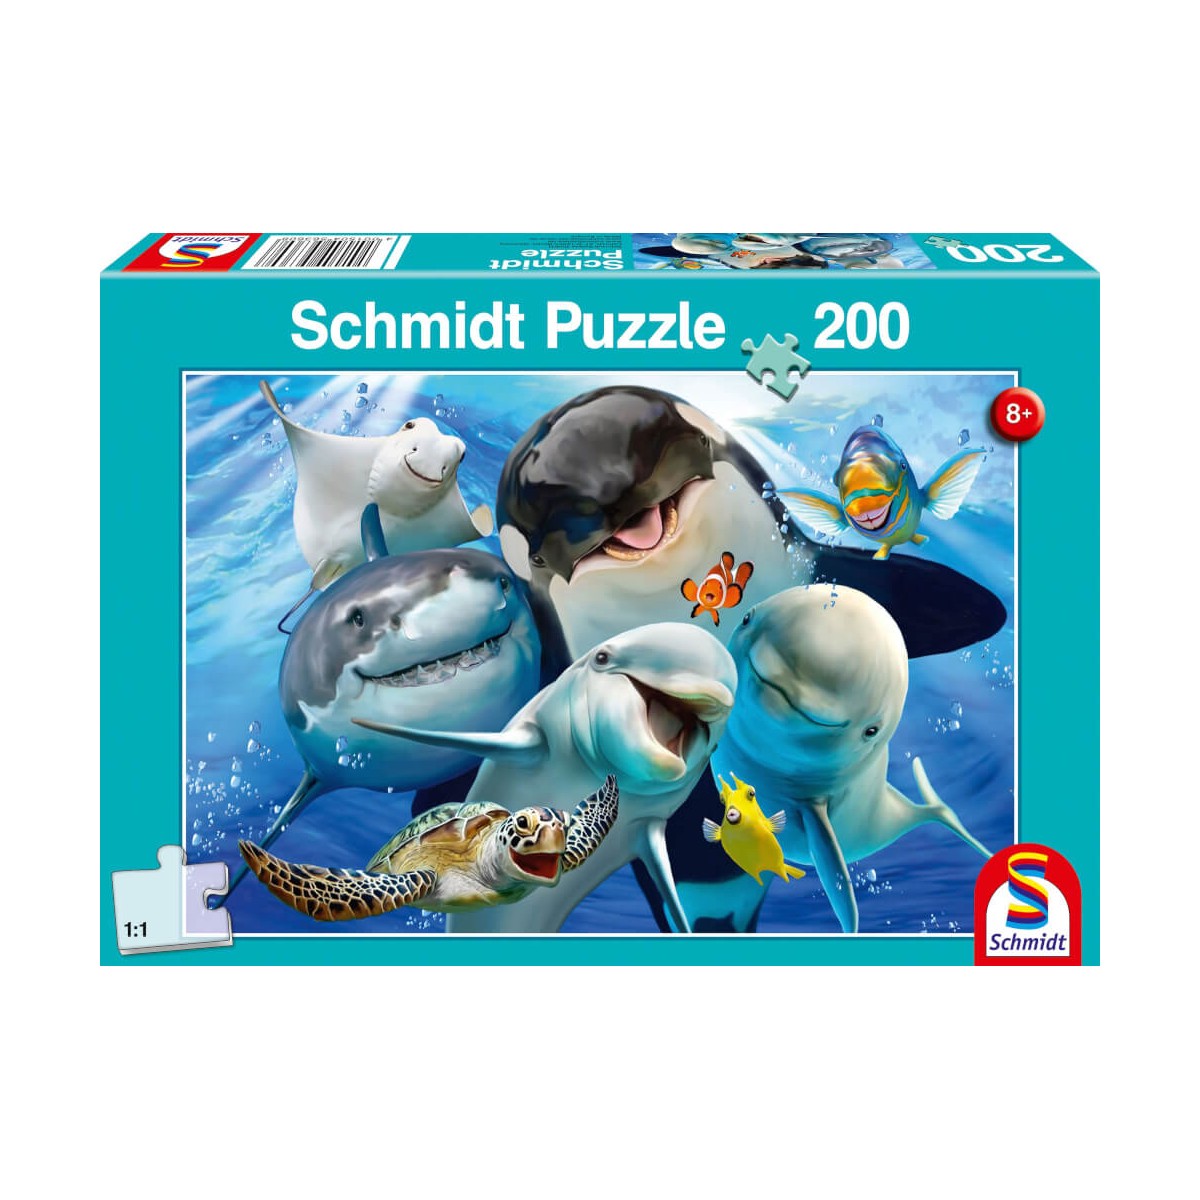 Schmidt Spiele Puzzle Unterwasser Freunde 200 Teile